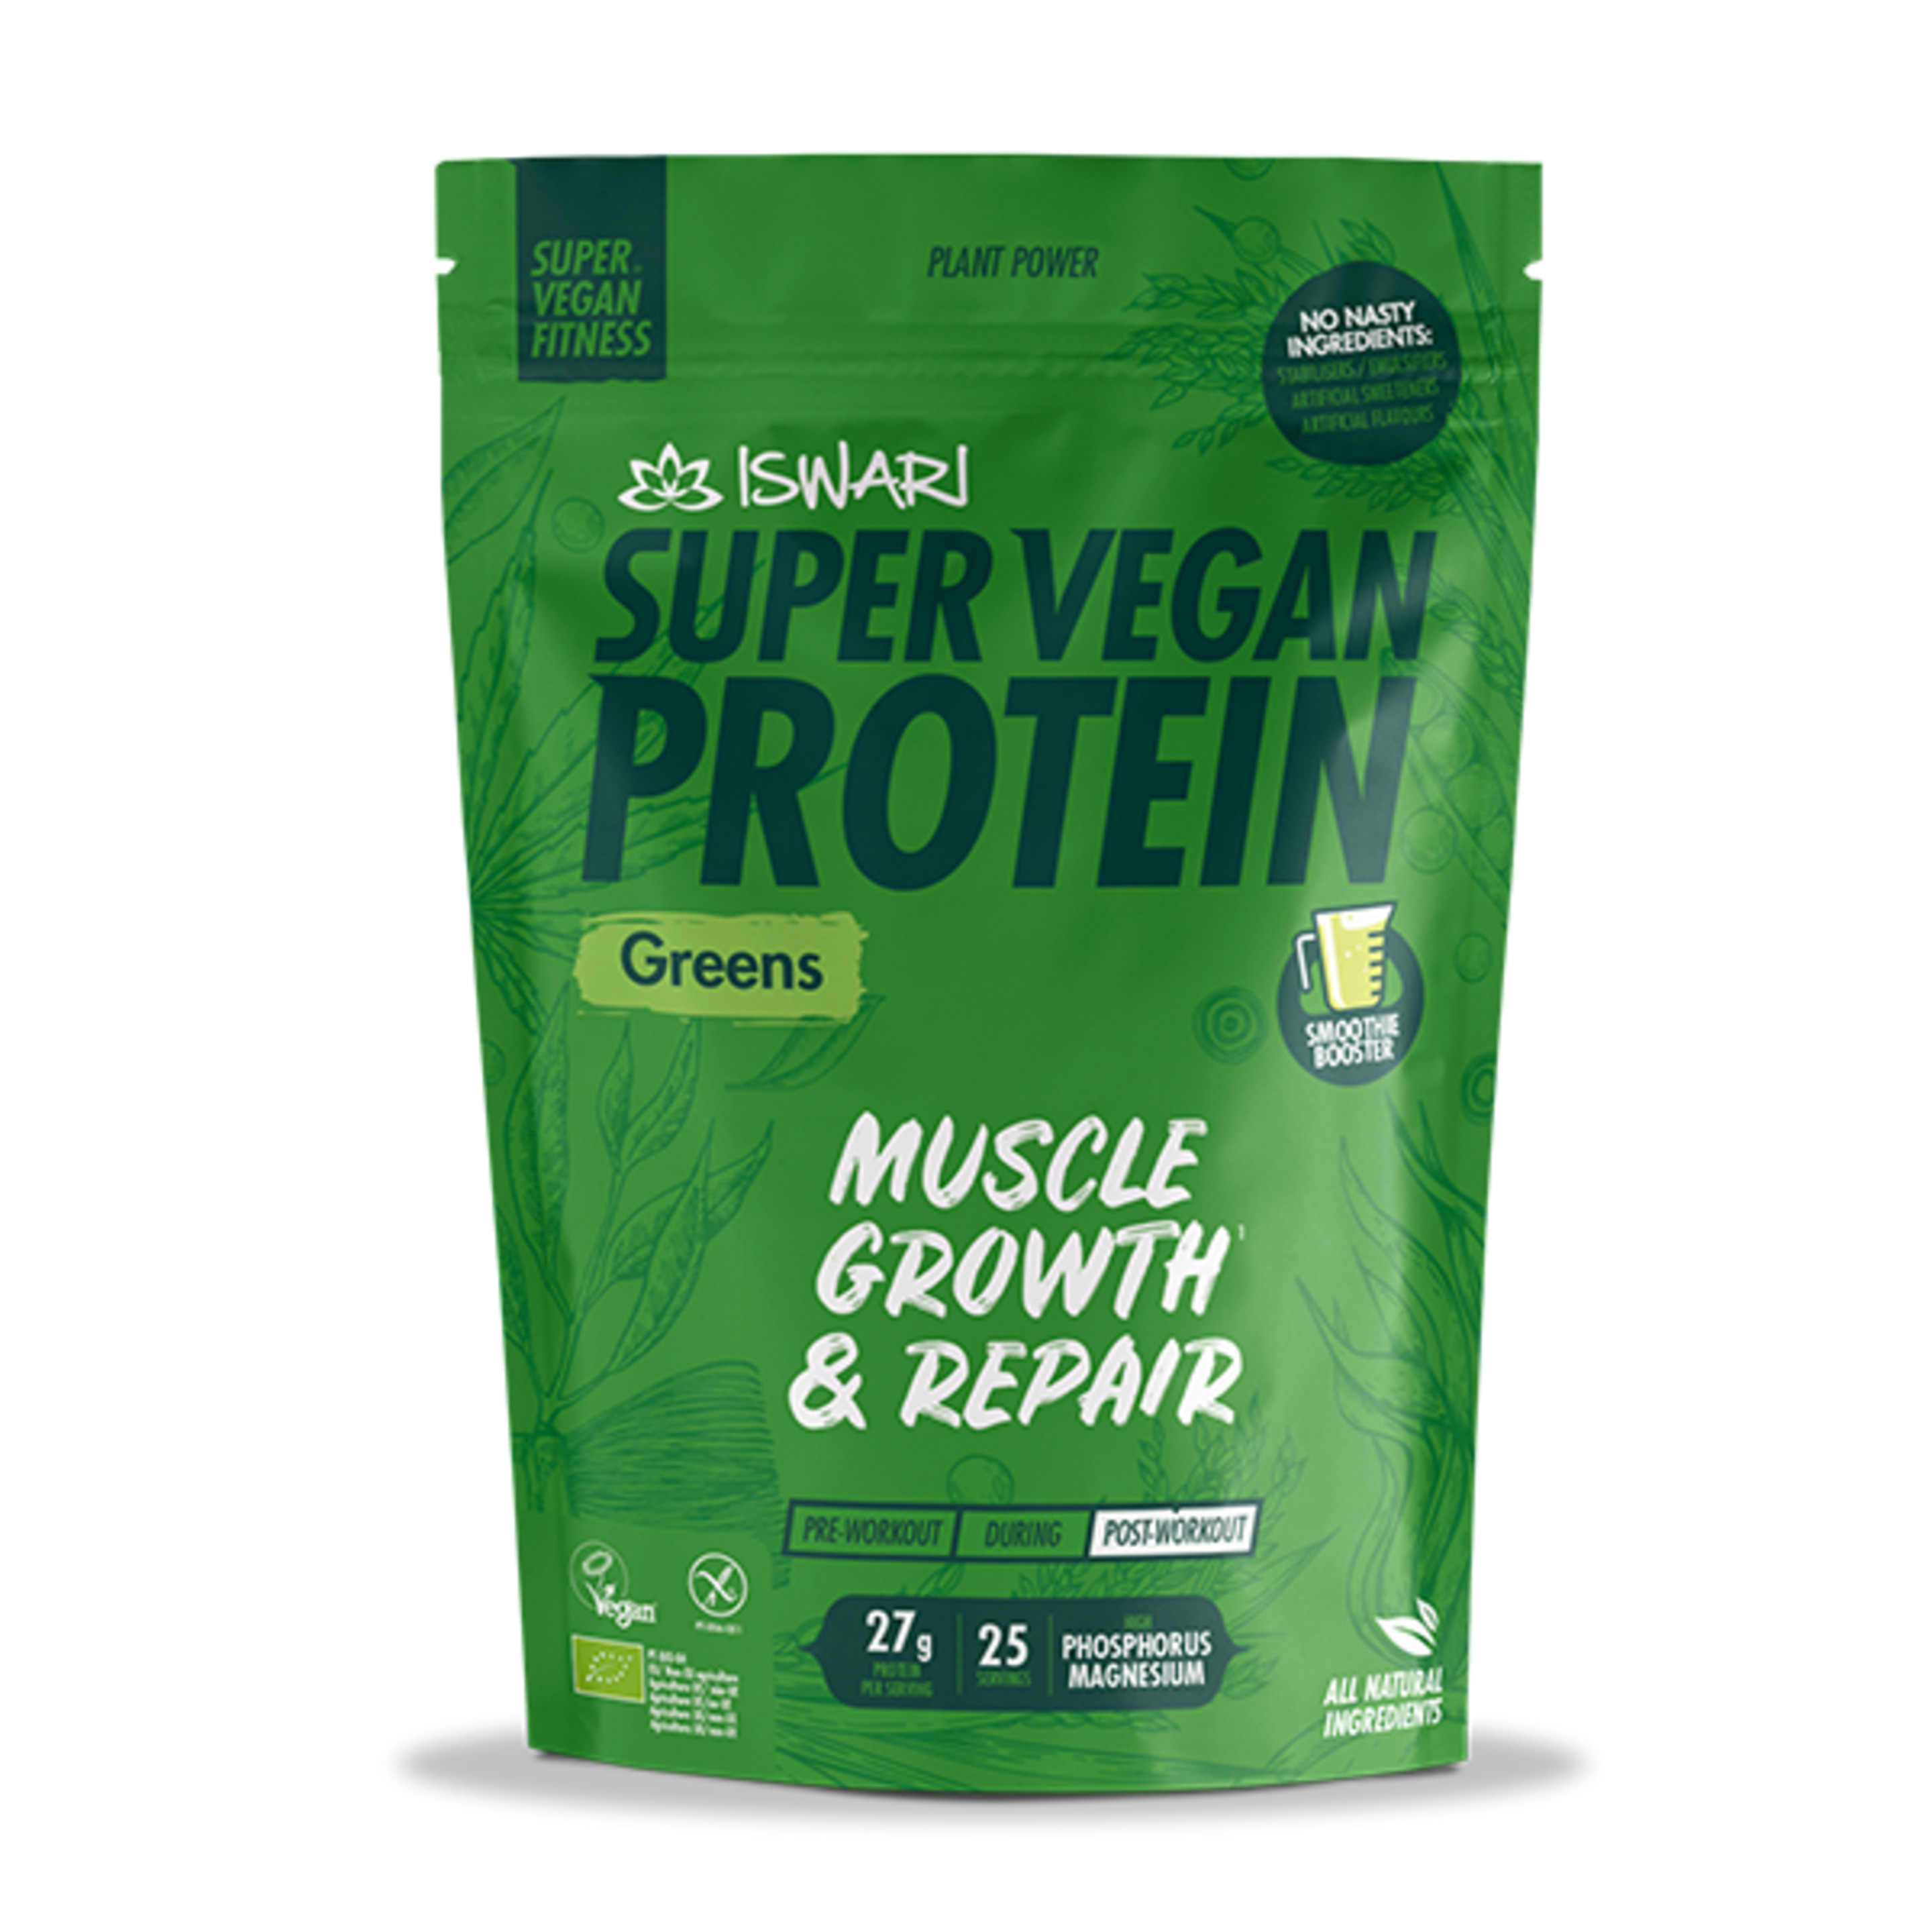 Super Vegan Protein